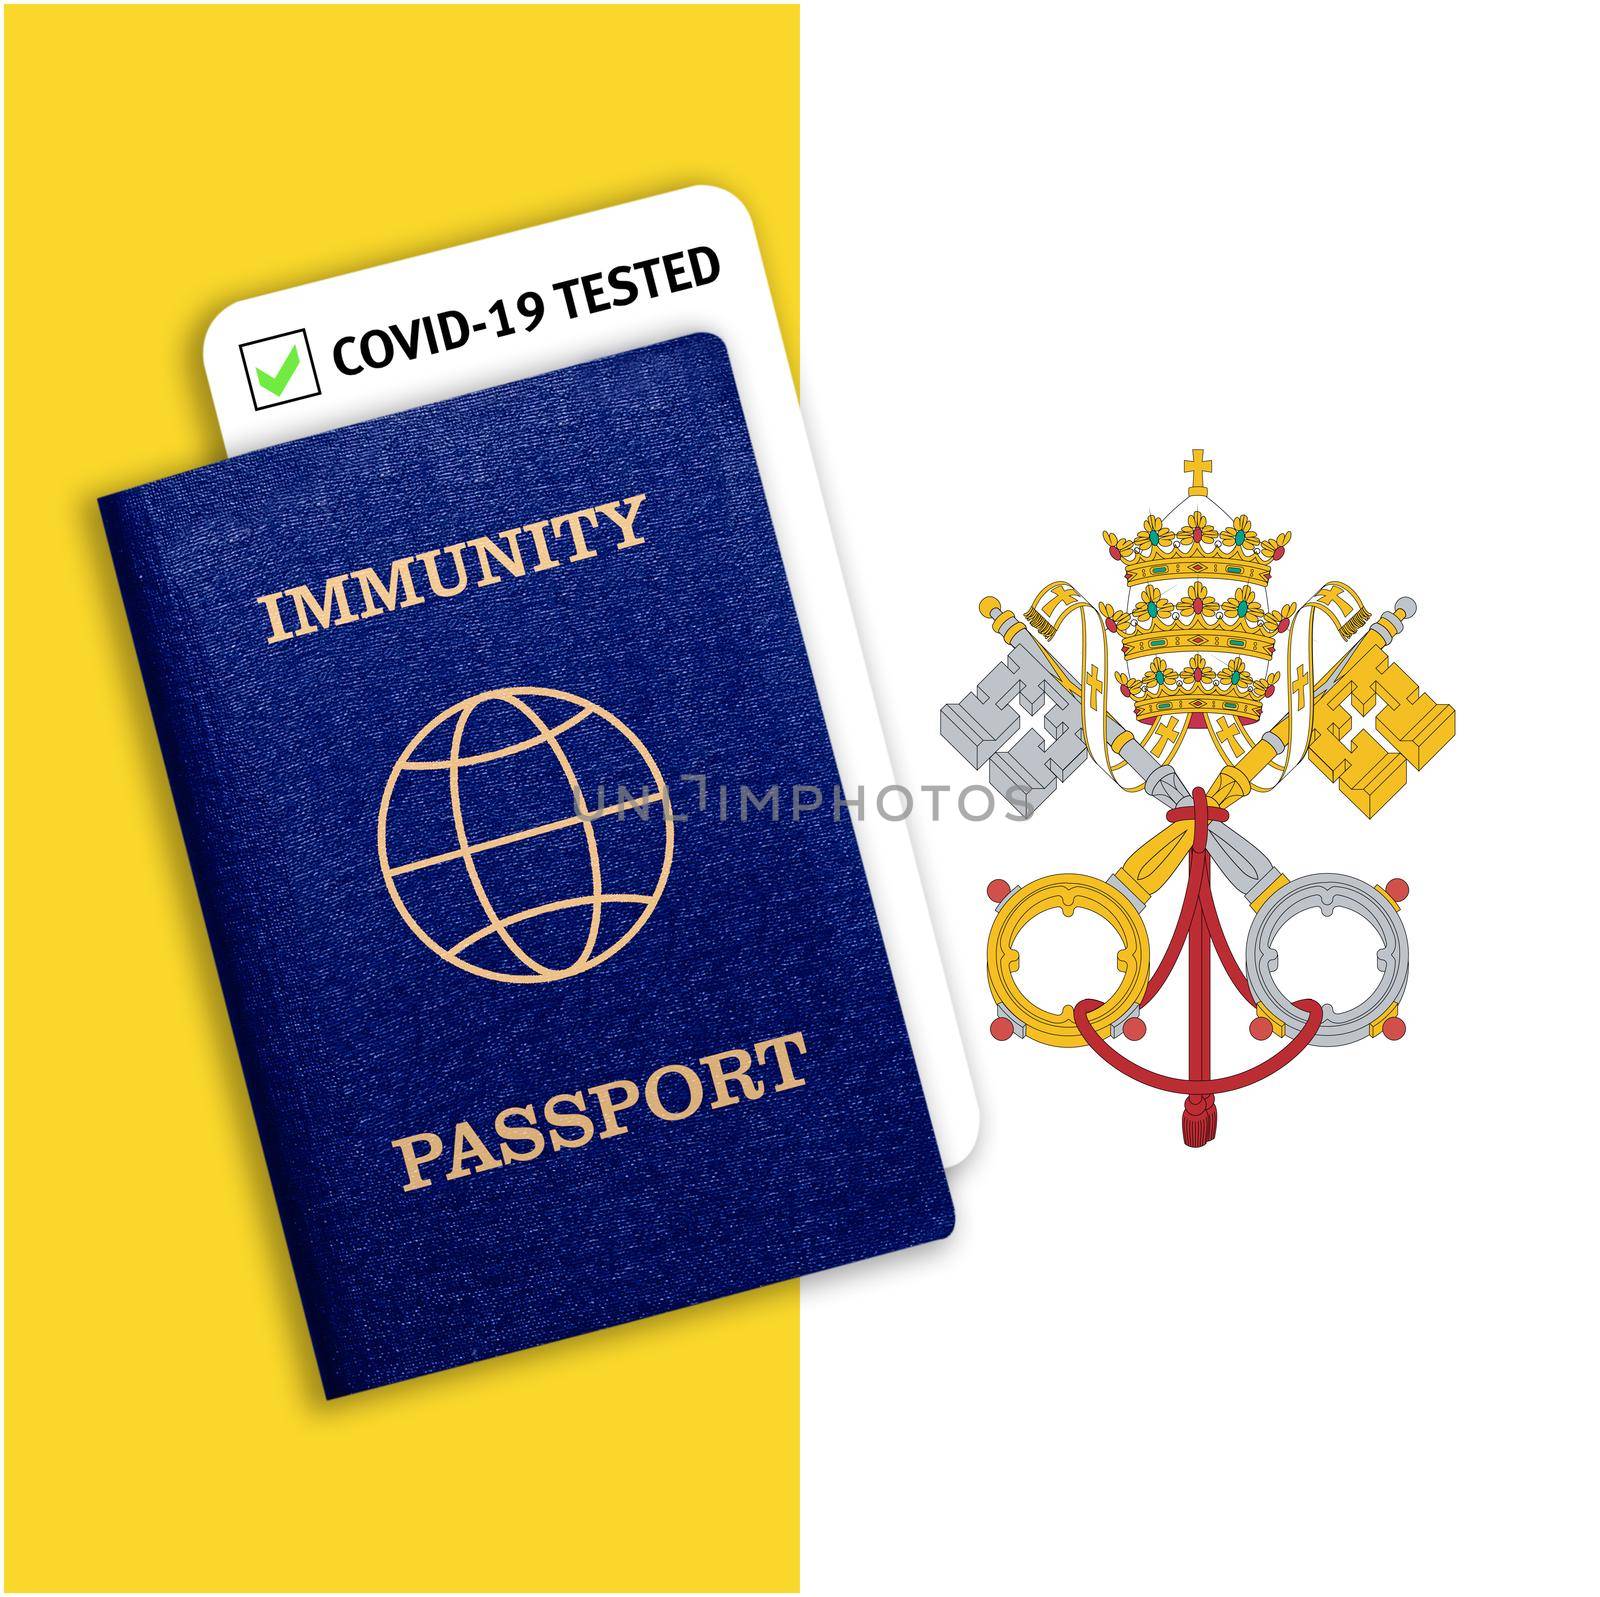 Immunity passport and coronavirus test with flag of Vatican by galinasharapova